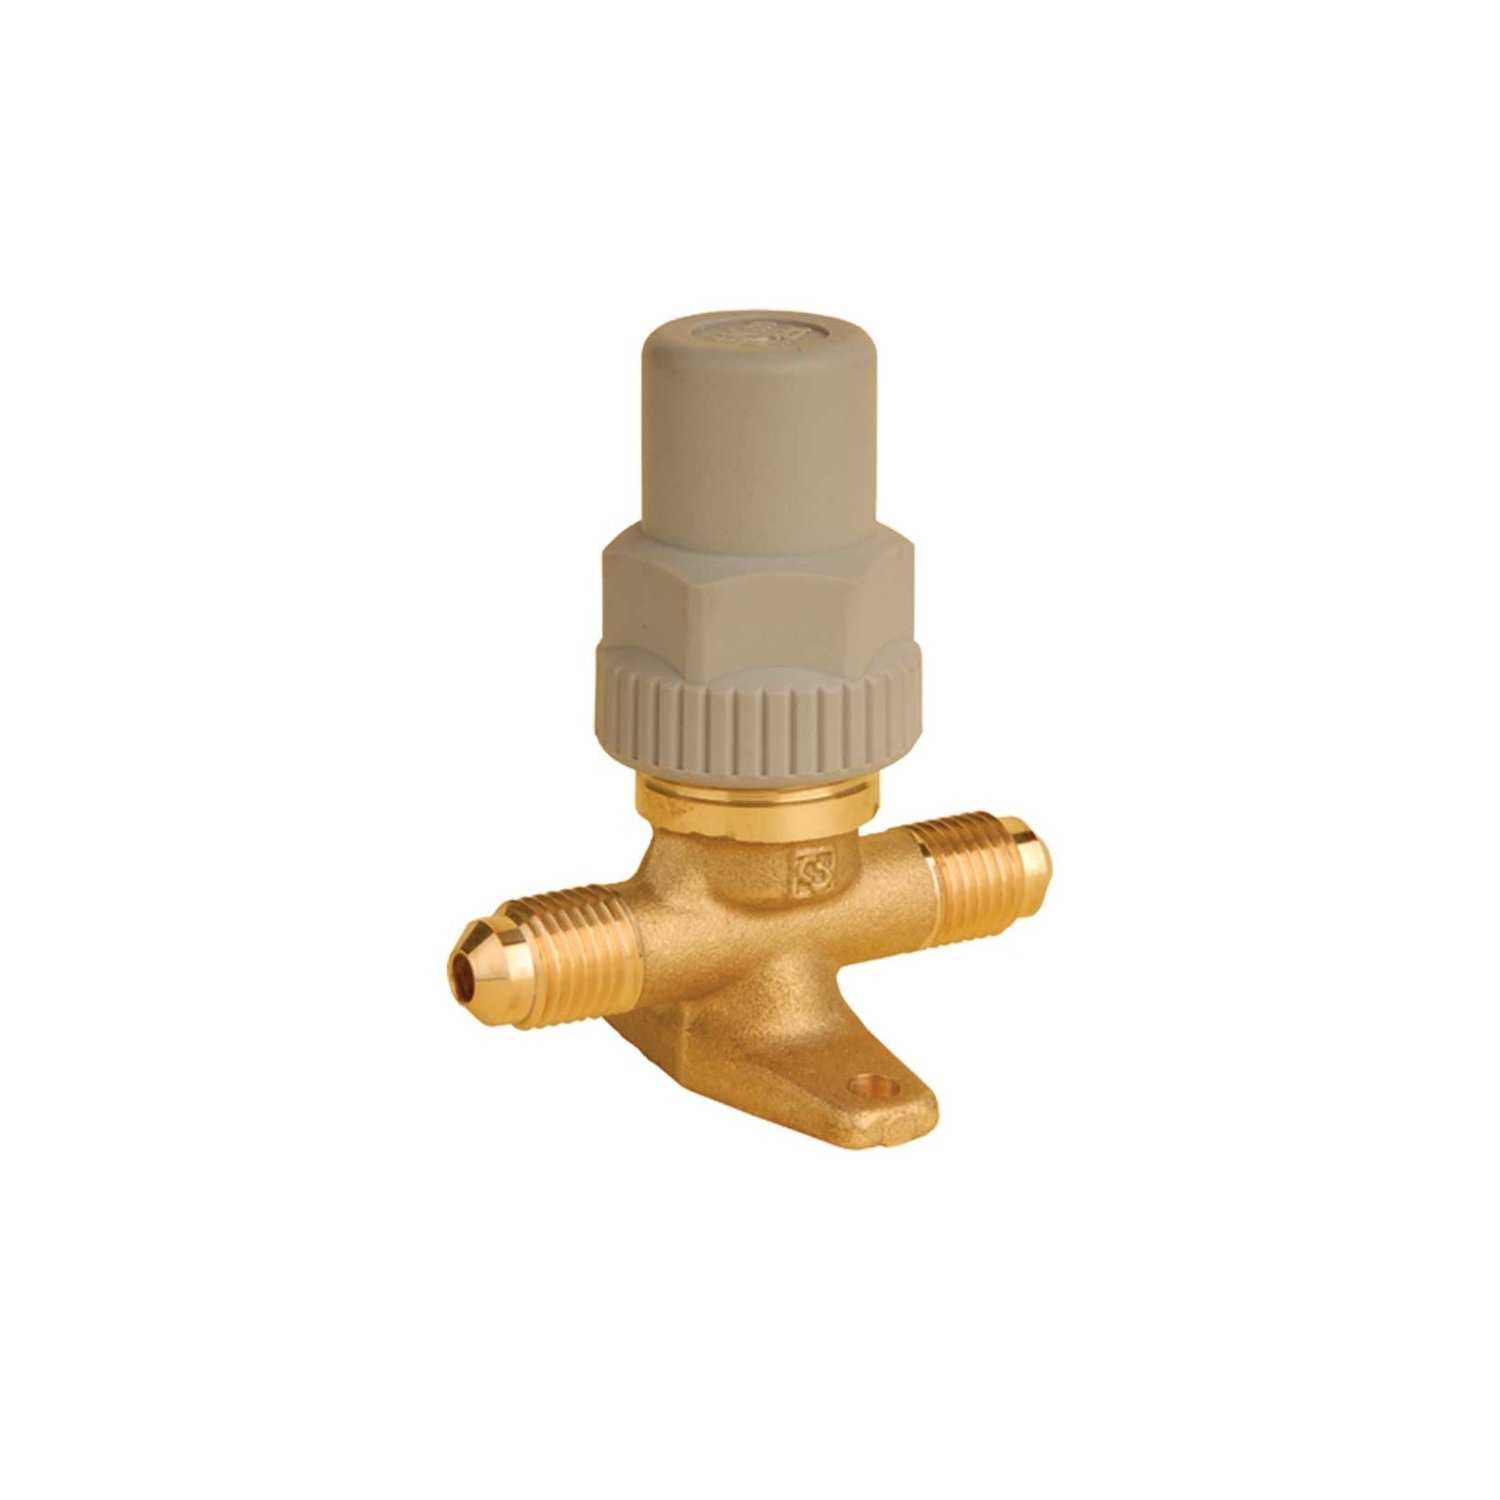 Shut-off valve Castel 6410/3, 3/8 "SAE